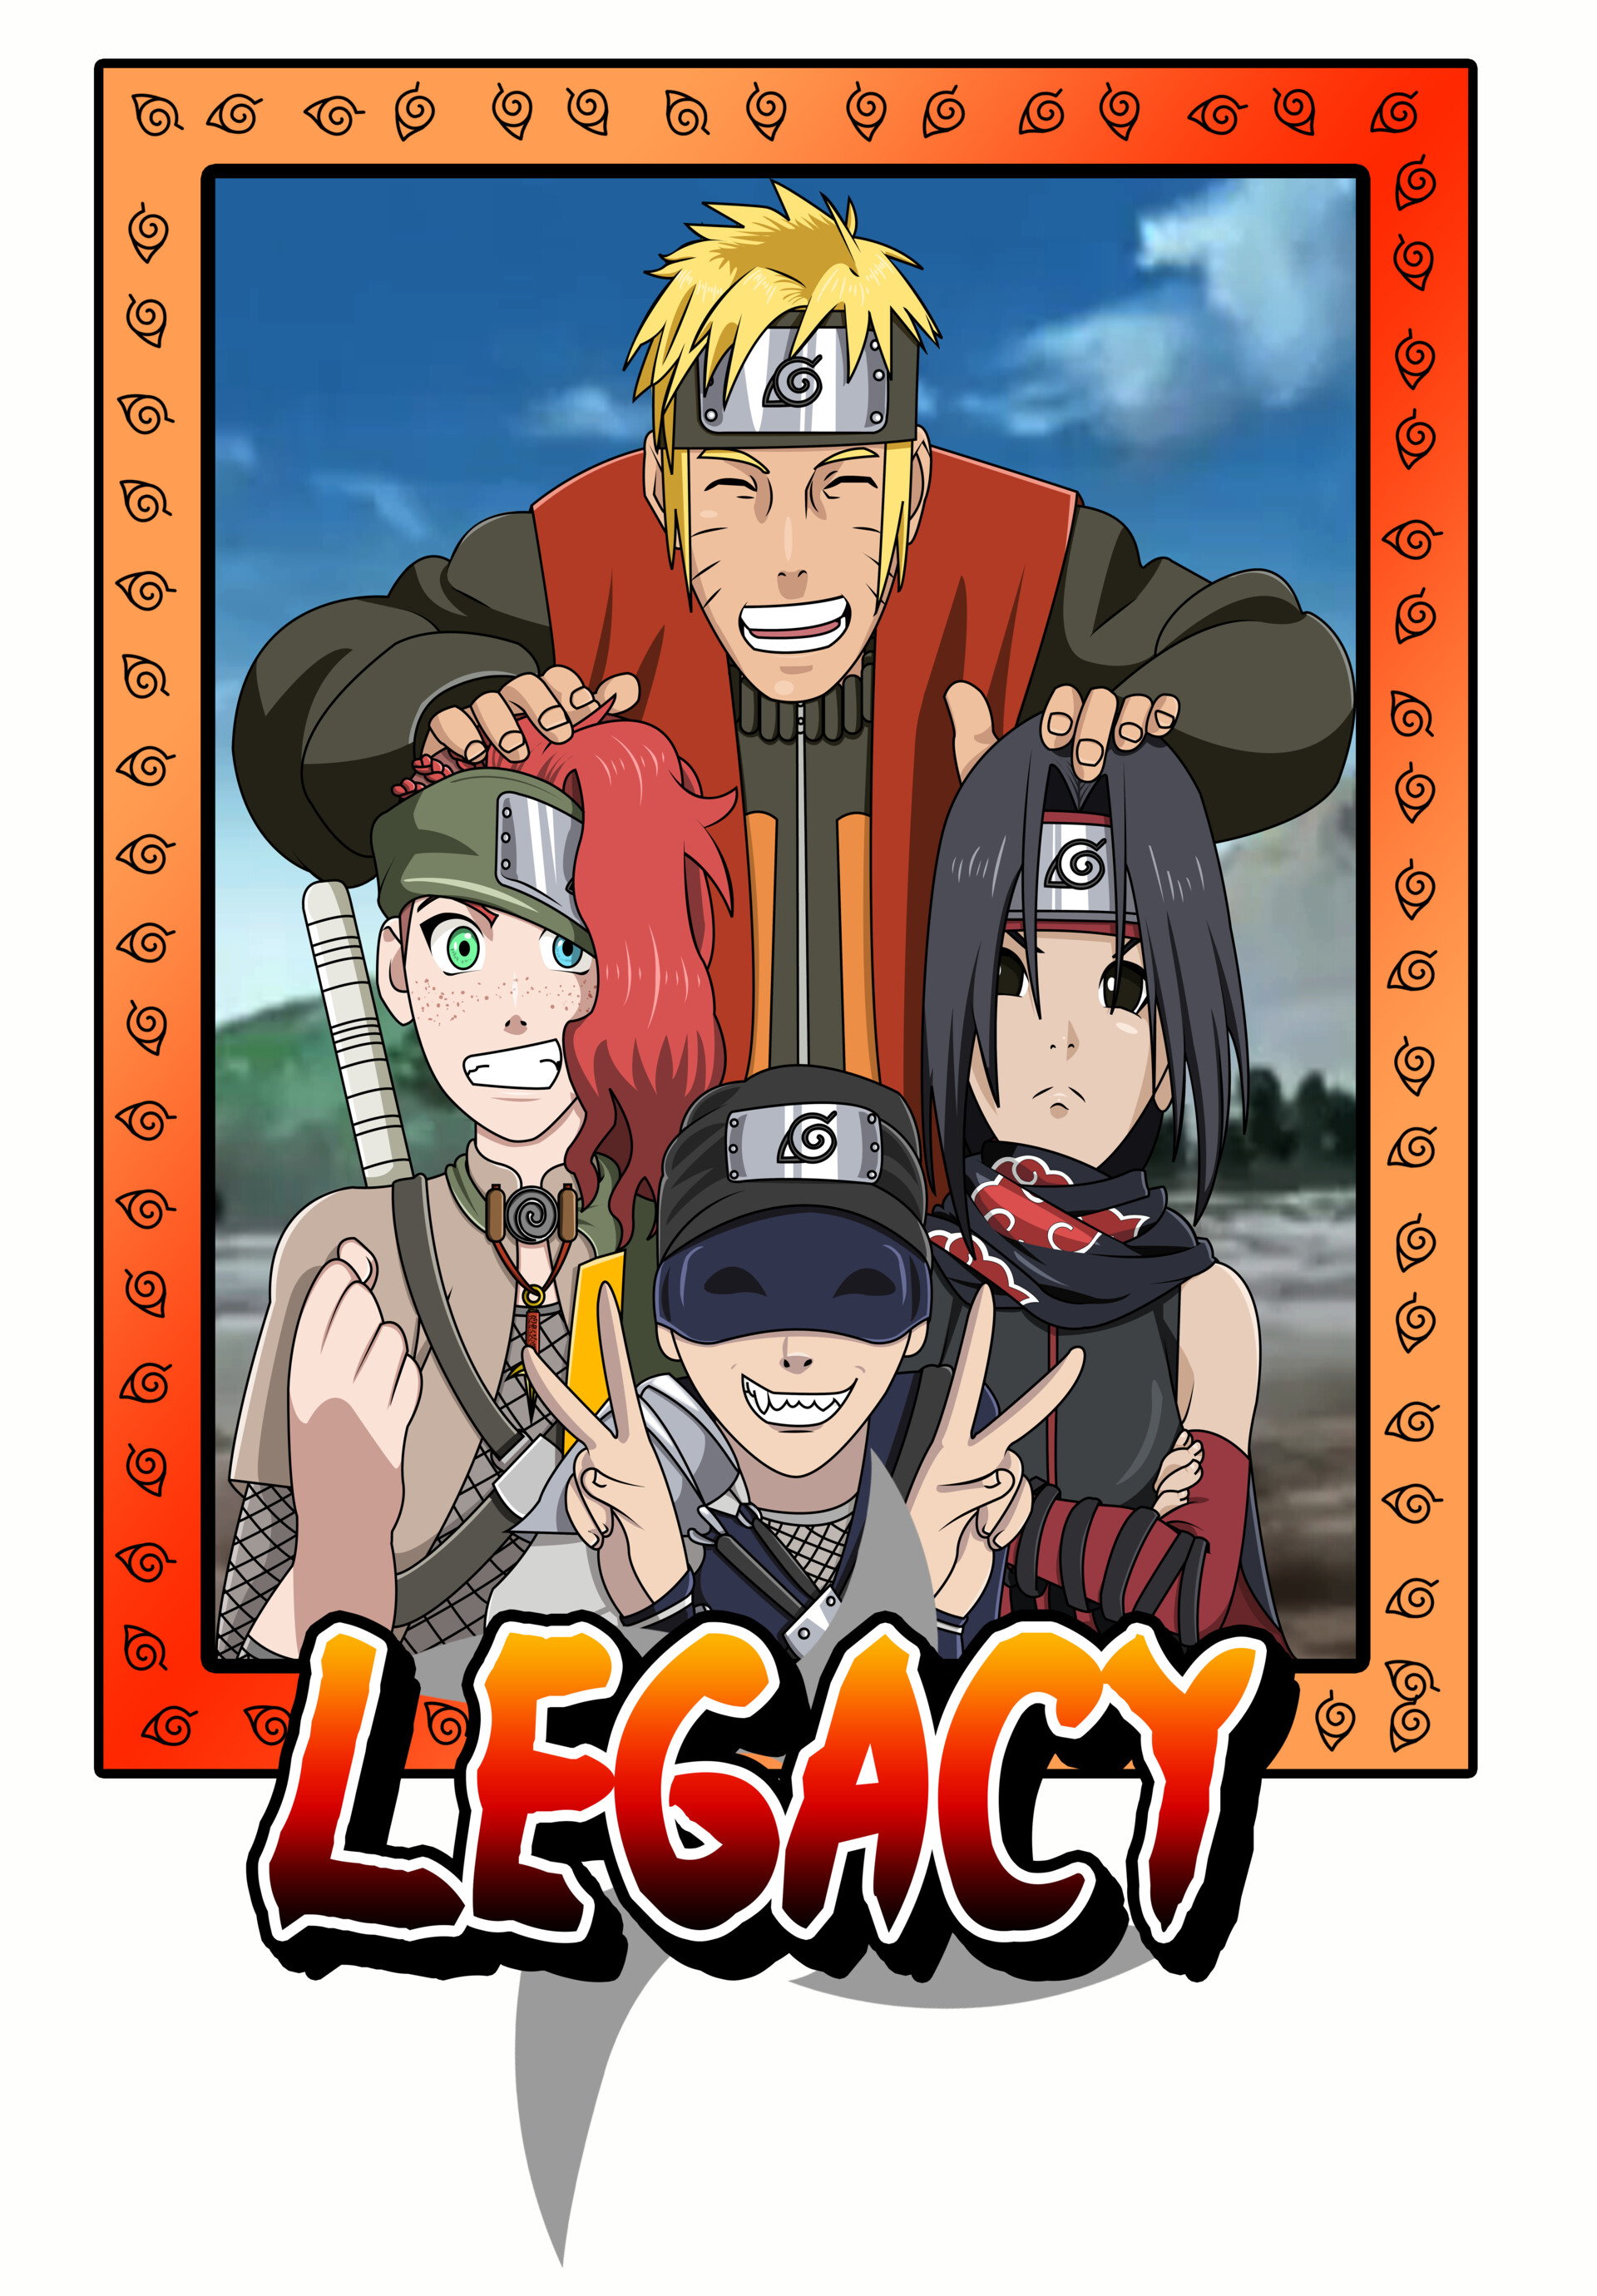 The Legacy of Naruto Uzumaki